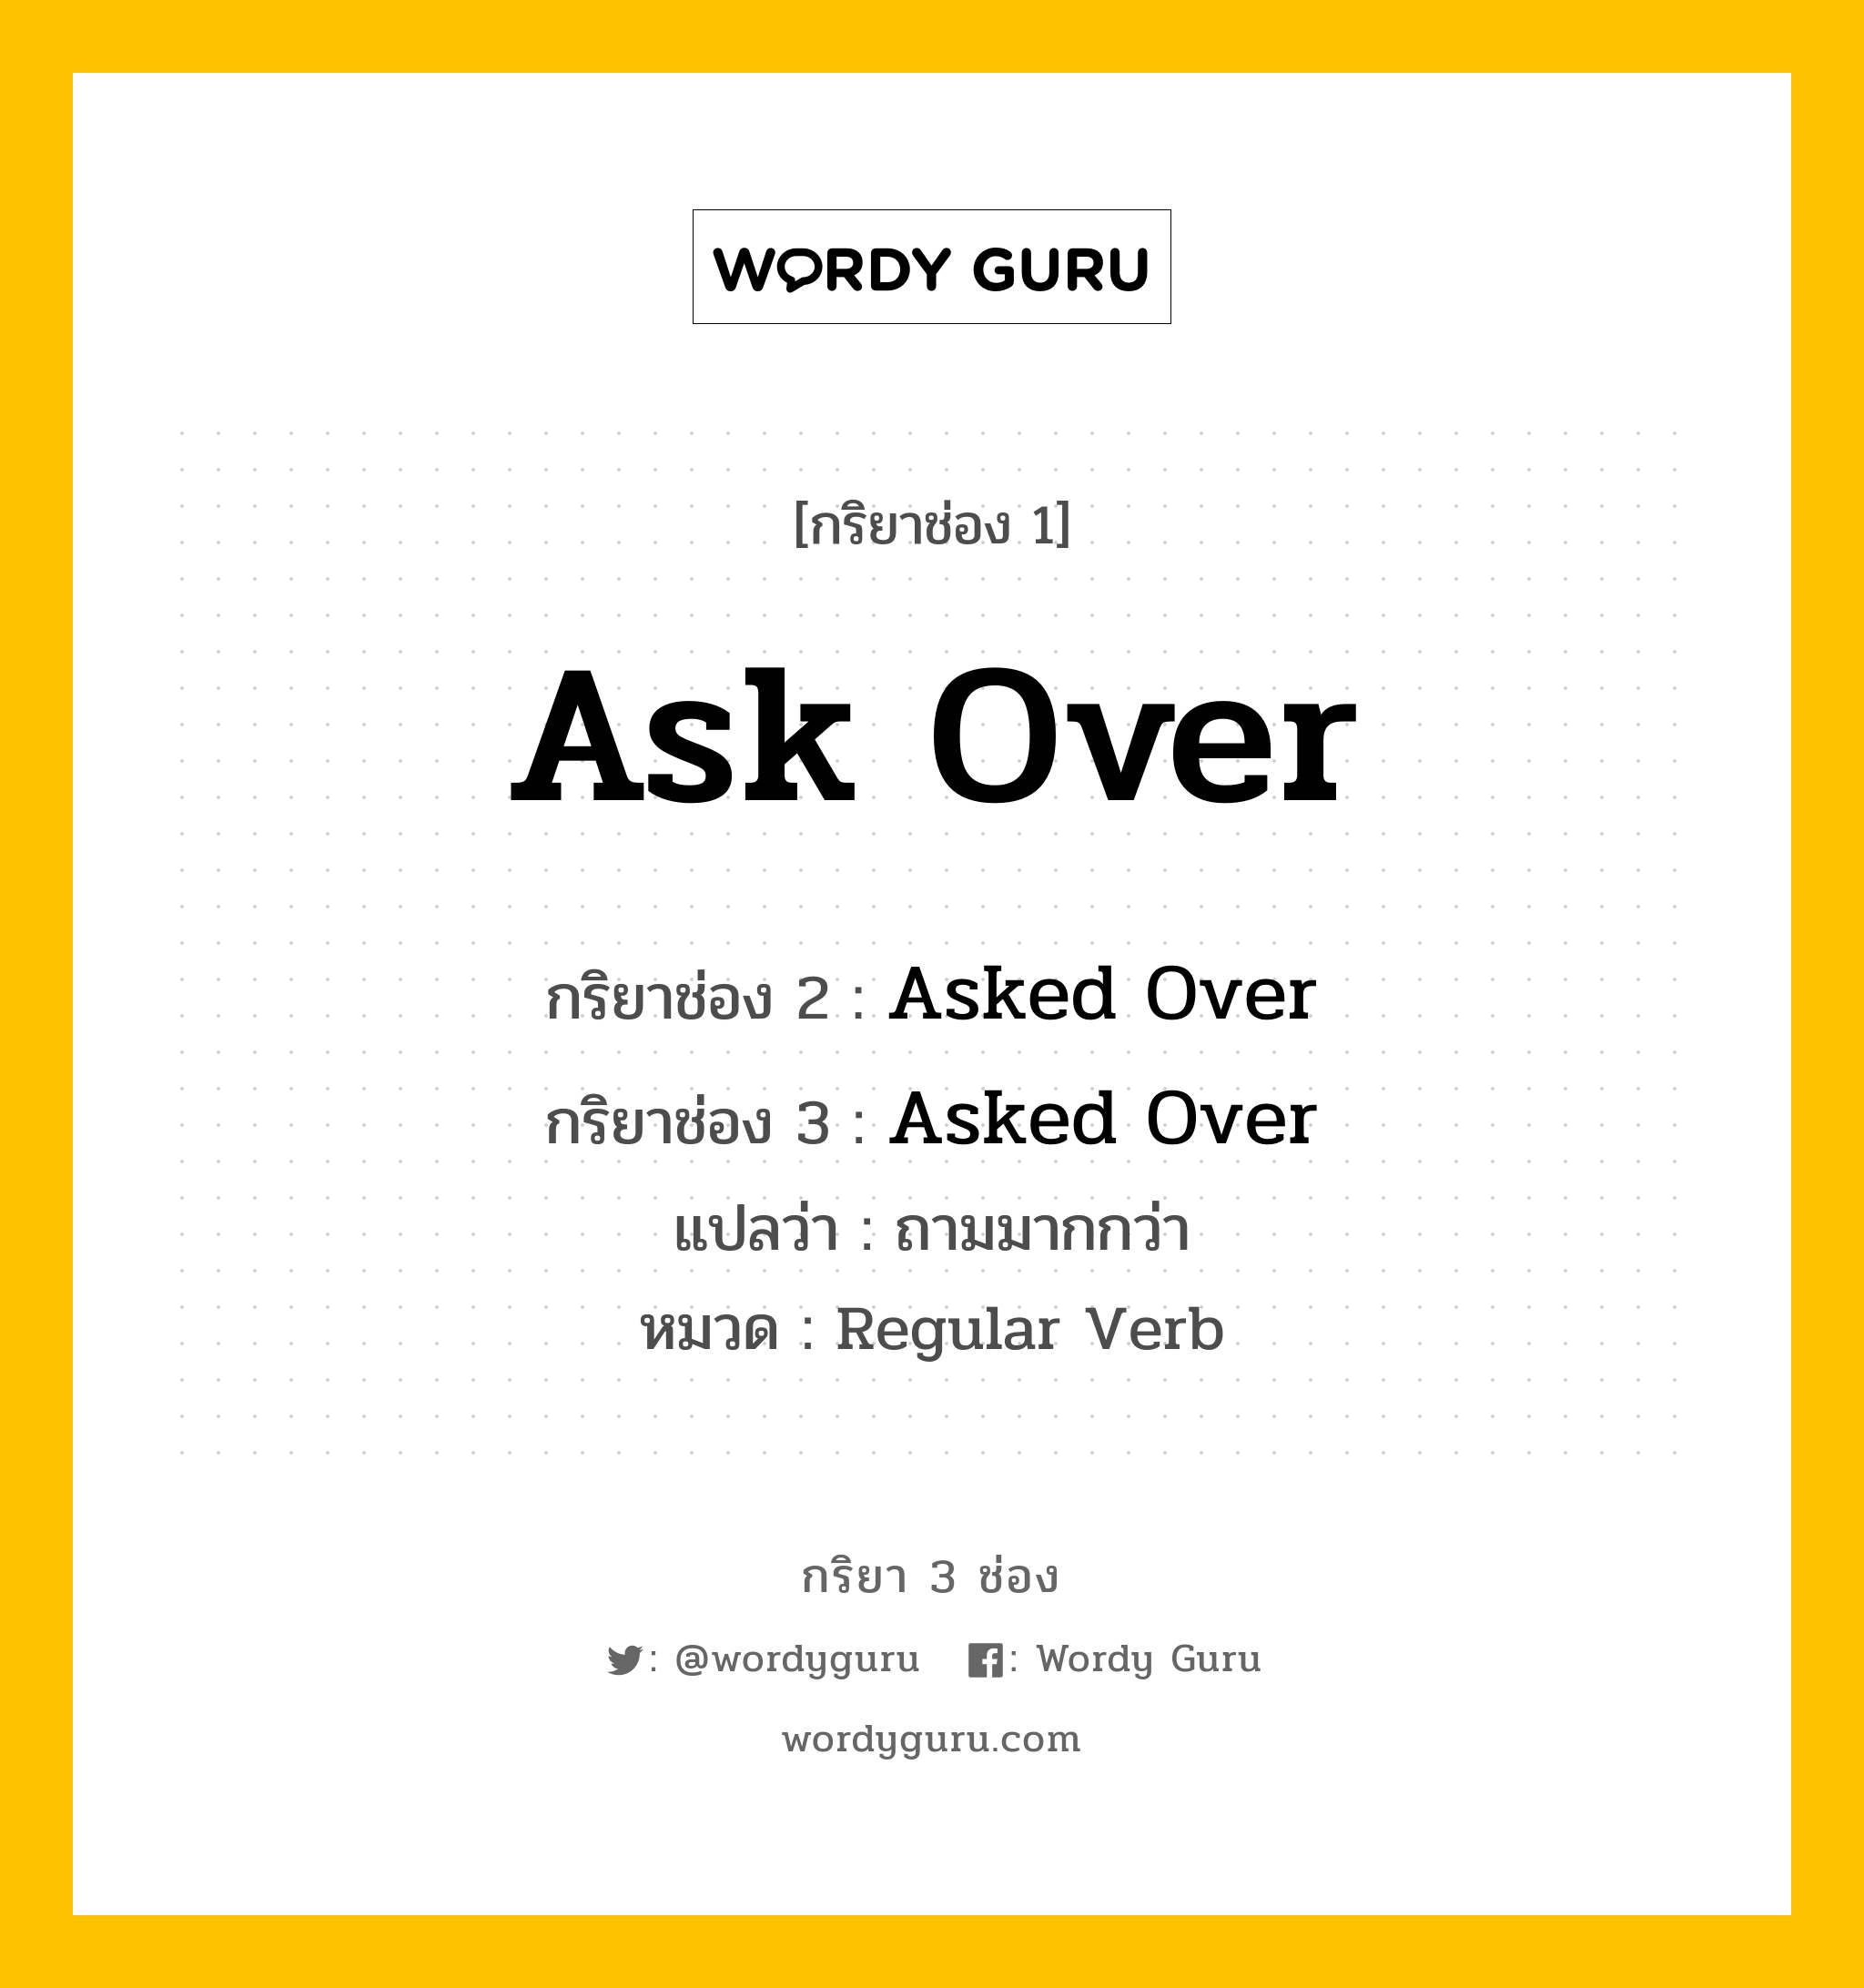 กริยา 3 ช่อง ของ Ask Over คืออะไร? มาดูคำอ่าน คำแปลกันเลย, กริยาช่อง 1 Ask Over กริยาช่อง 2 Asked Over กริยาช่อง 3 Asked Over แปลว่า ถามมากกว่า หมวด Regular Verb หมวด Regular Verb